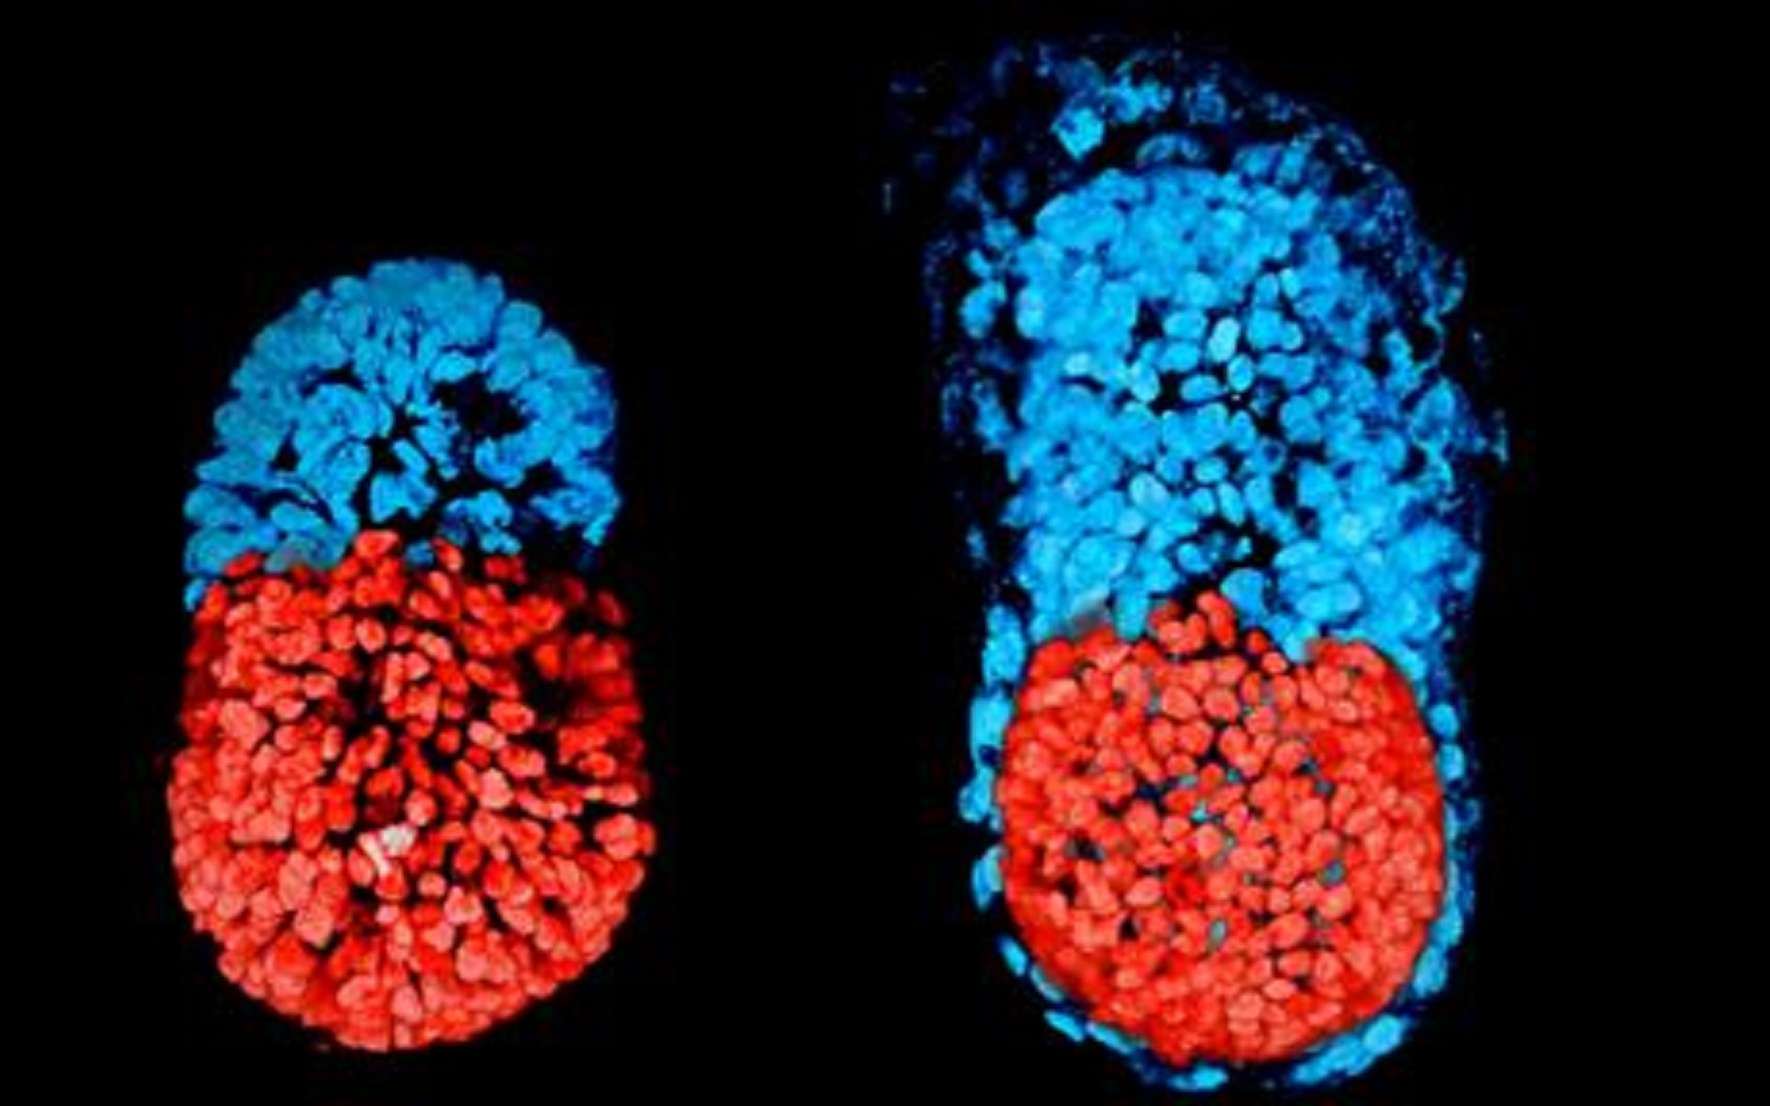 Embryon à partir de cellules souches à 96 h (à gauche) et cultivé in vitro 48 h depuis le stade blastocyste (à droite). © Sarah Harrison et Gaelle Recher, Zernicka-Goetz Lab, University of Cambridge, CC BY 3.0